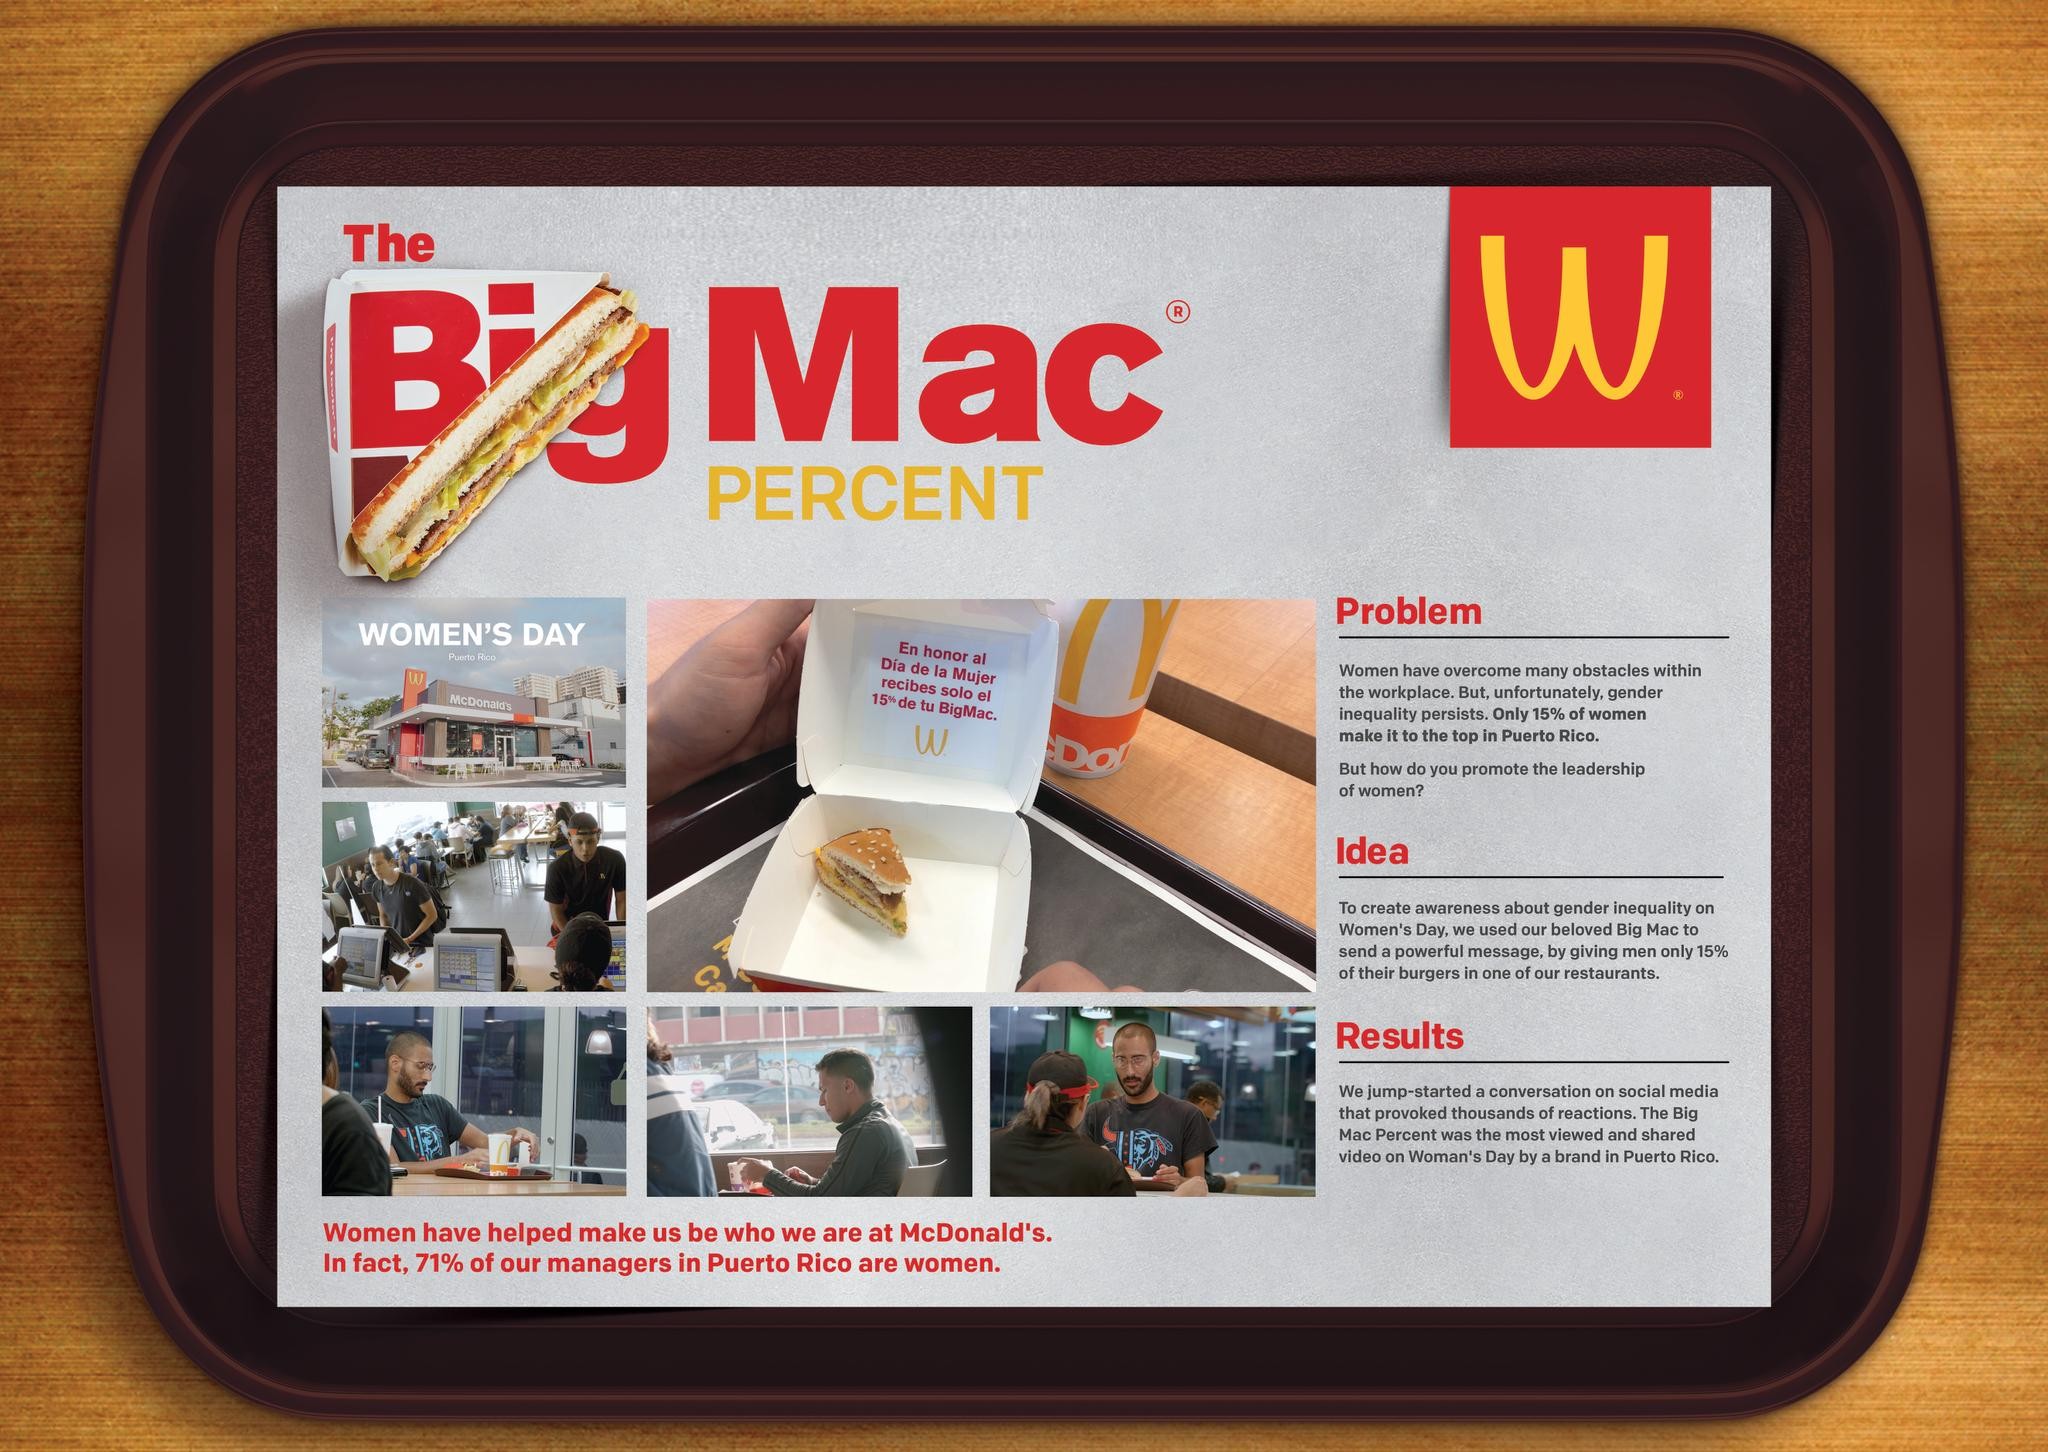 McDonald's - The Big Mac Percent